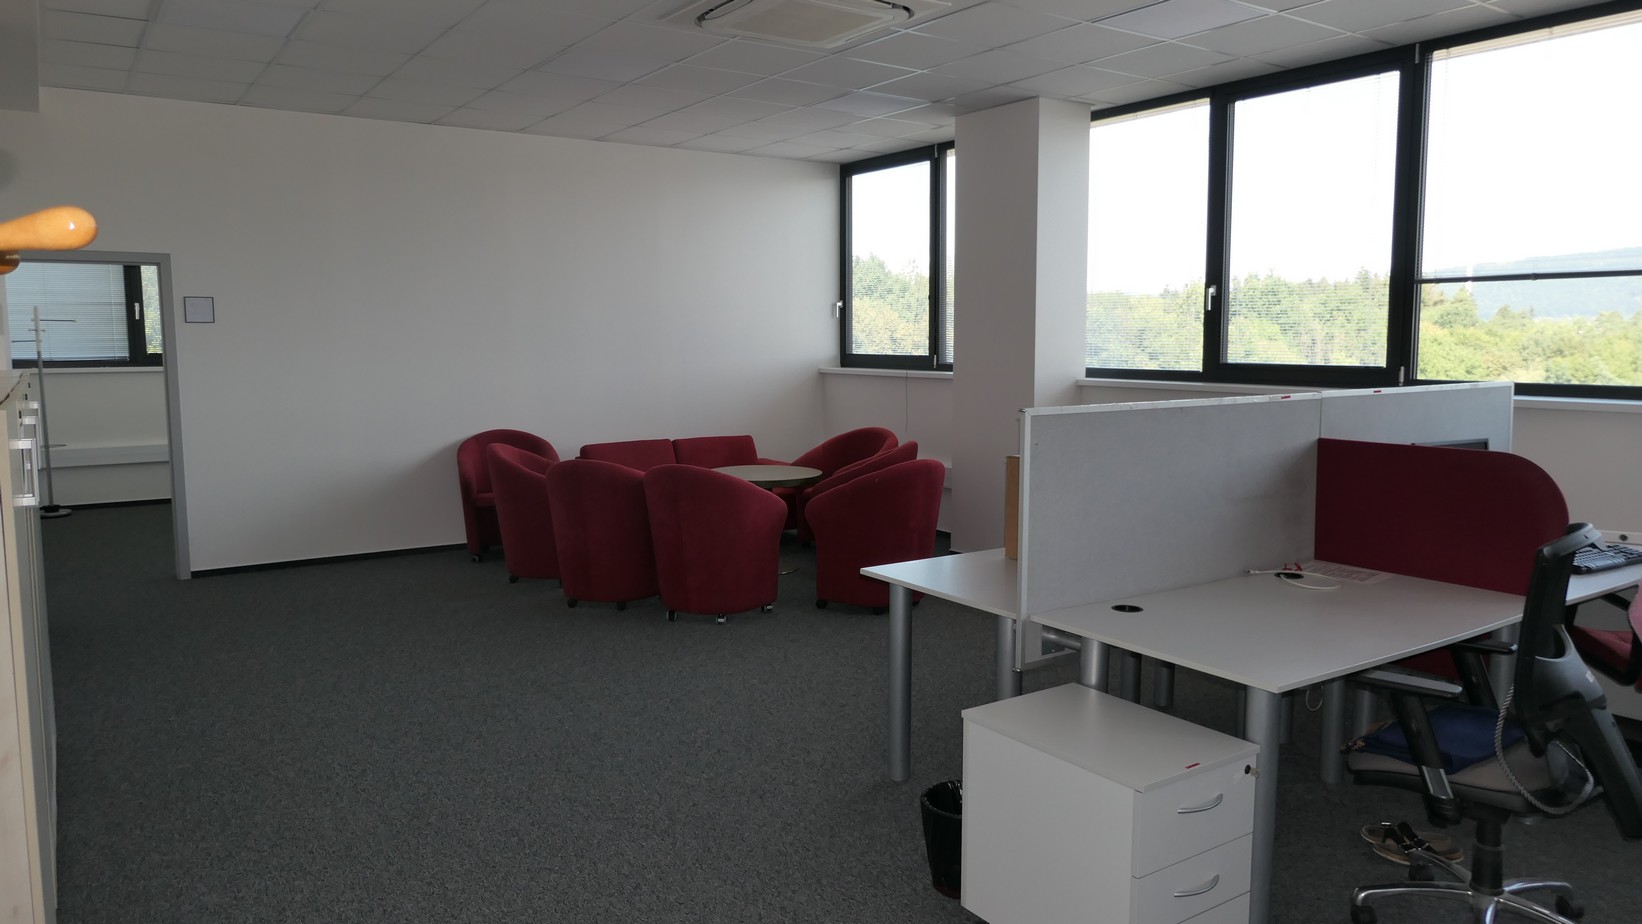 Moderné kancelárske priestory na prenájom s parkovaním, od 39-520 m2, Žilina okrajová časť.